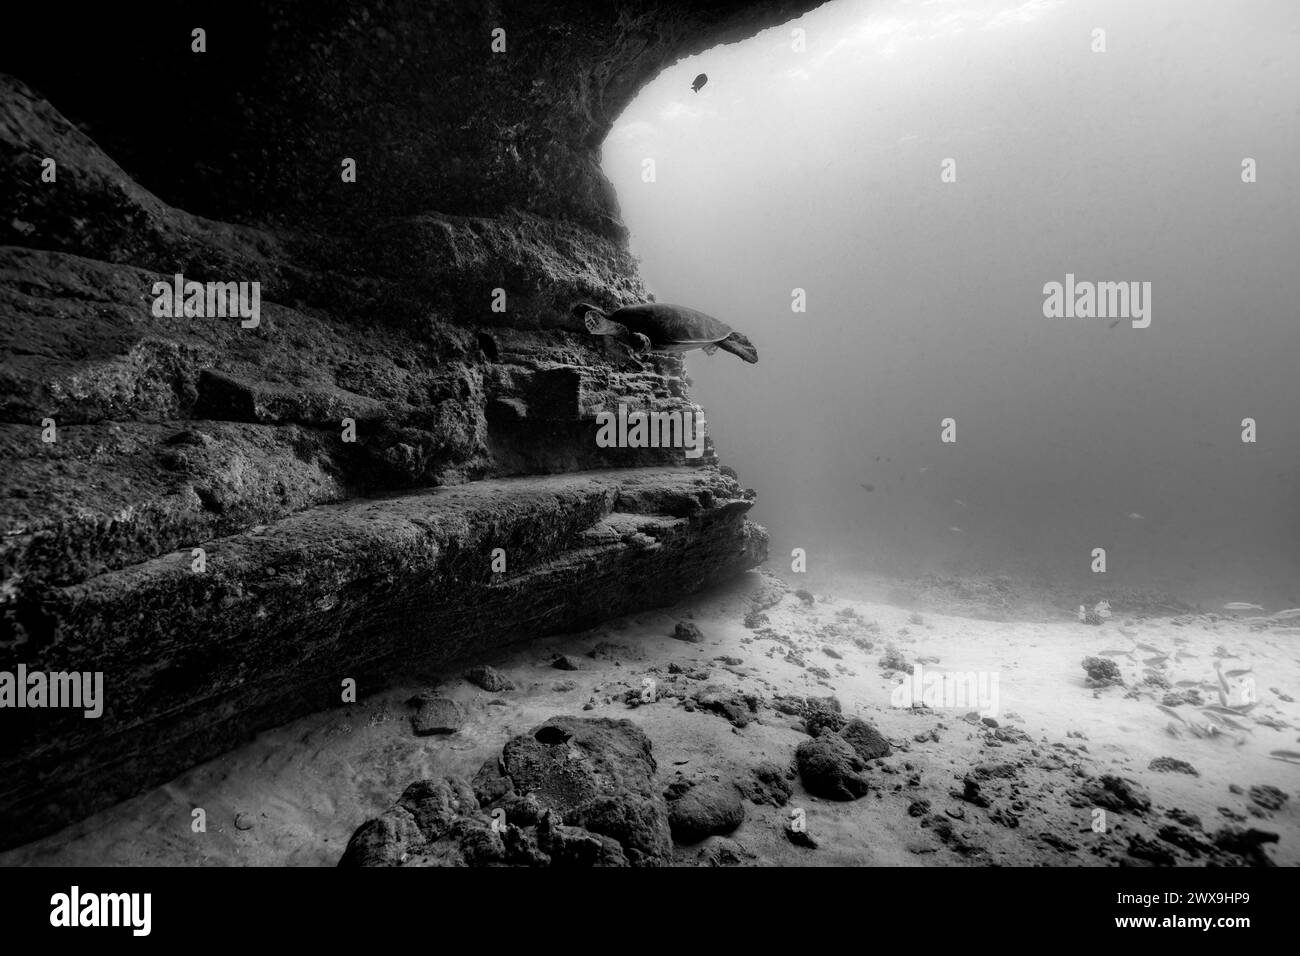 Une tortue de mer verte du Pacifique pénètre dans une entrée de grotte sous-marine montrant la texture ombragée de la paroi de la grotte et du sol sablonneux. En noir et blanc. Banque D'Images